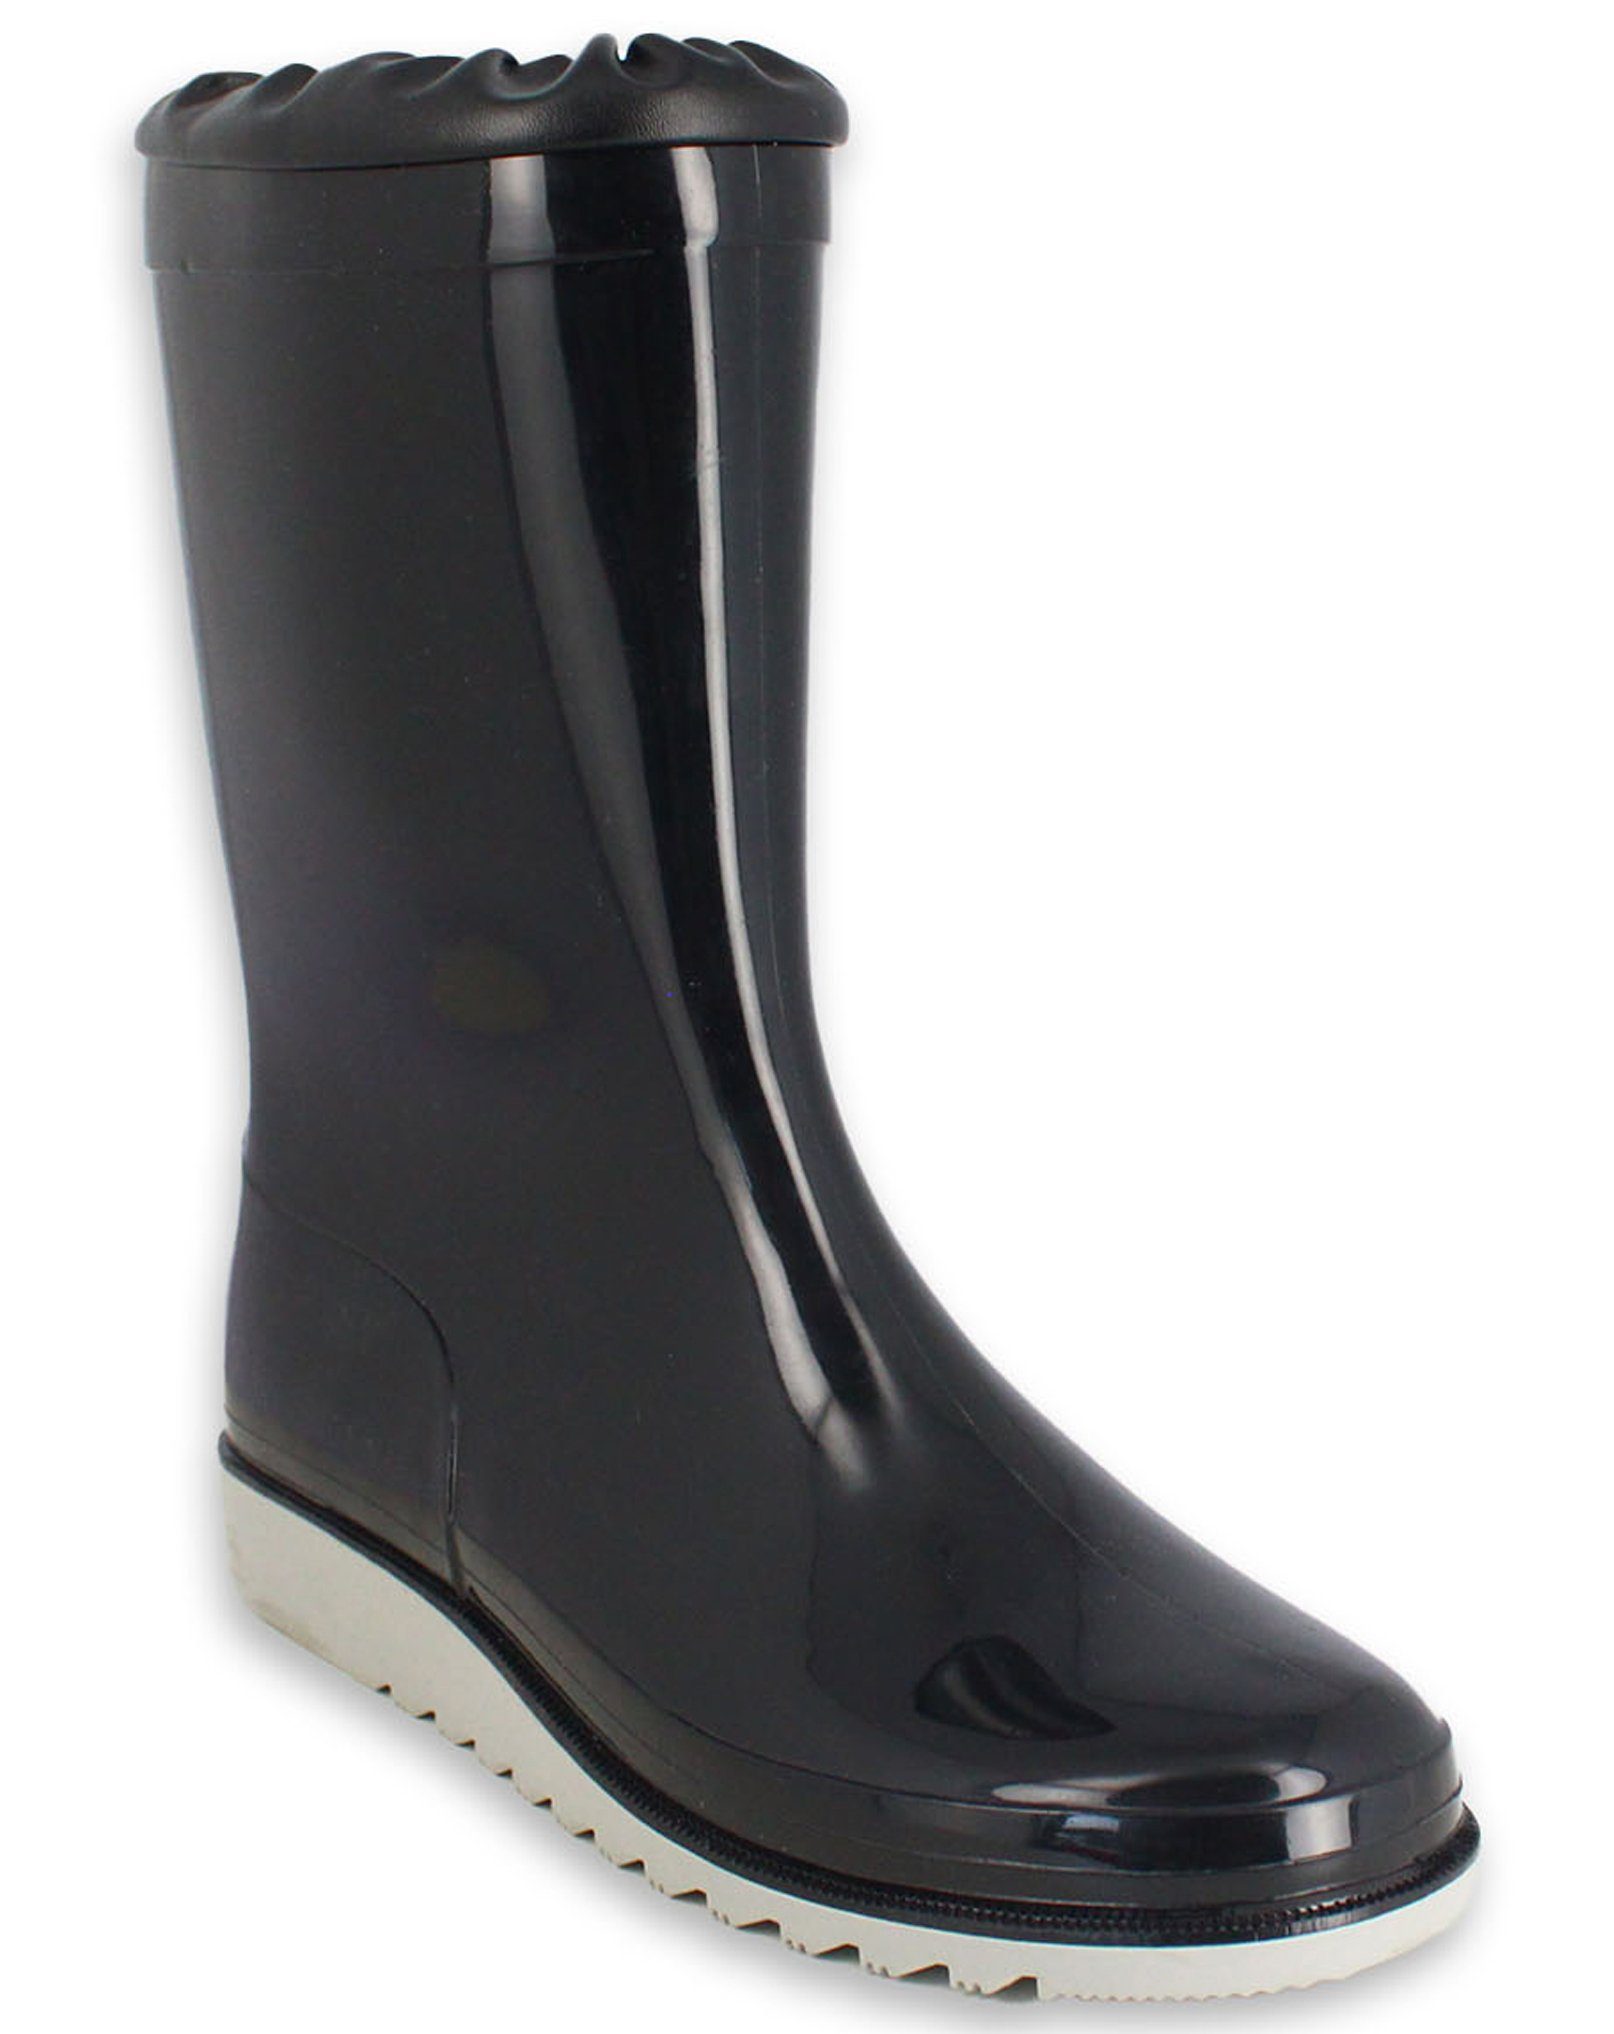 Wetterschutzkragen, Regenstiefel Gummistiefel Stiefel, Füße (zeitloser schwarz Basic trockene Einlegesohle bei mit für Regenwetter) Beck wasserdicht, mit